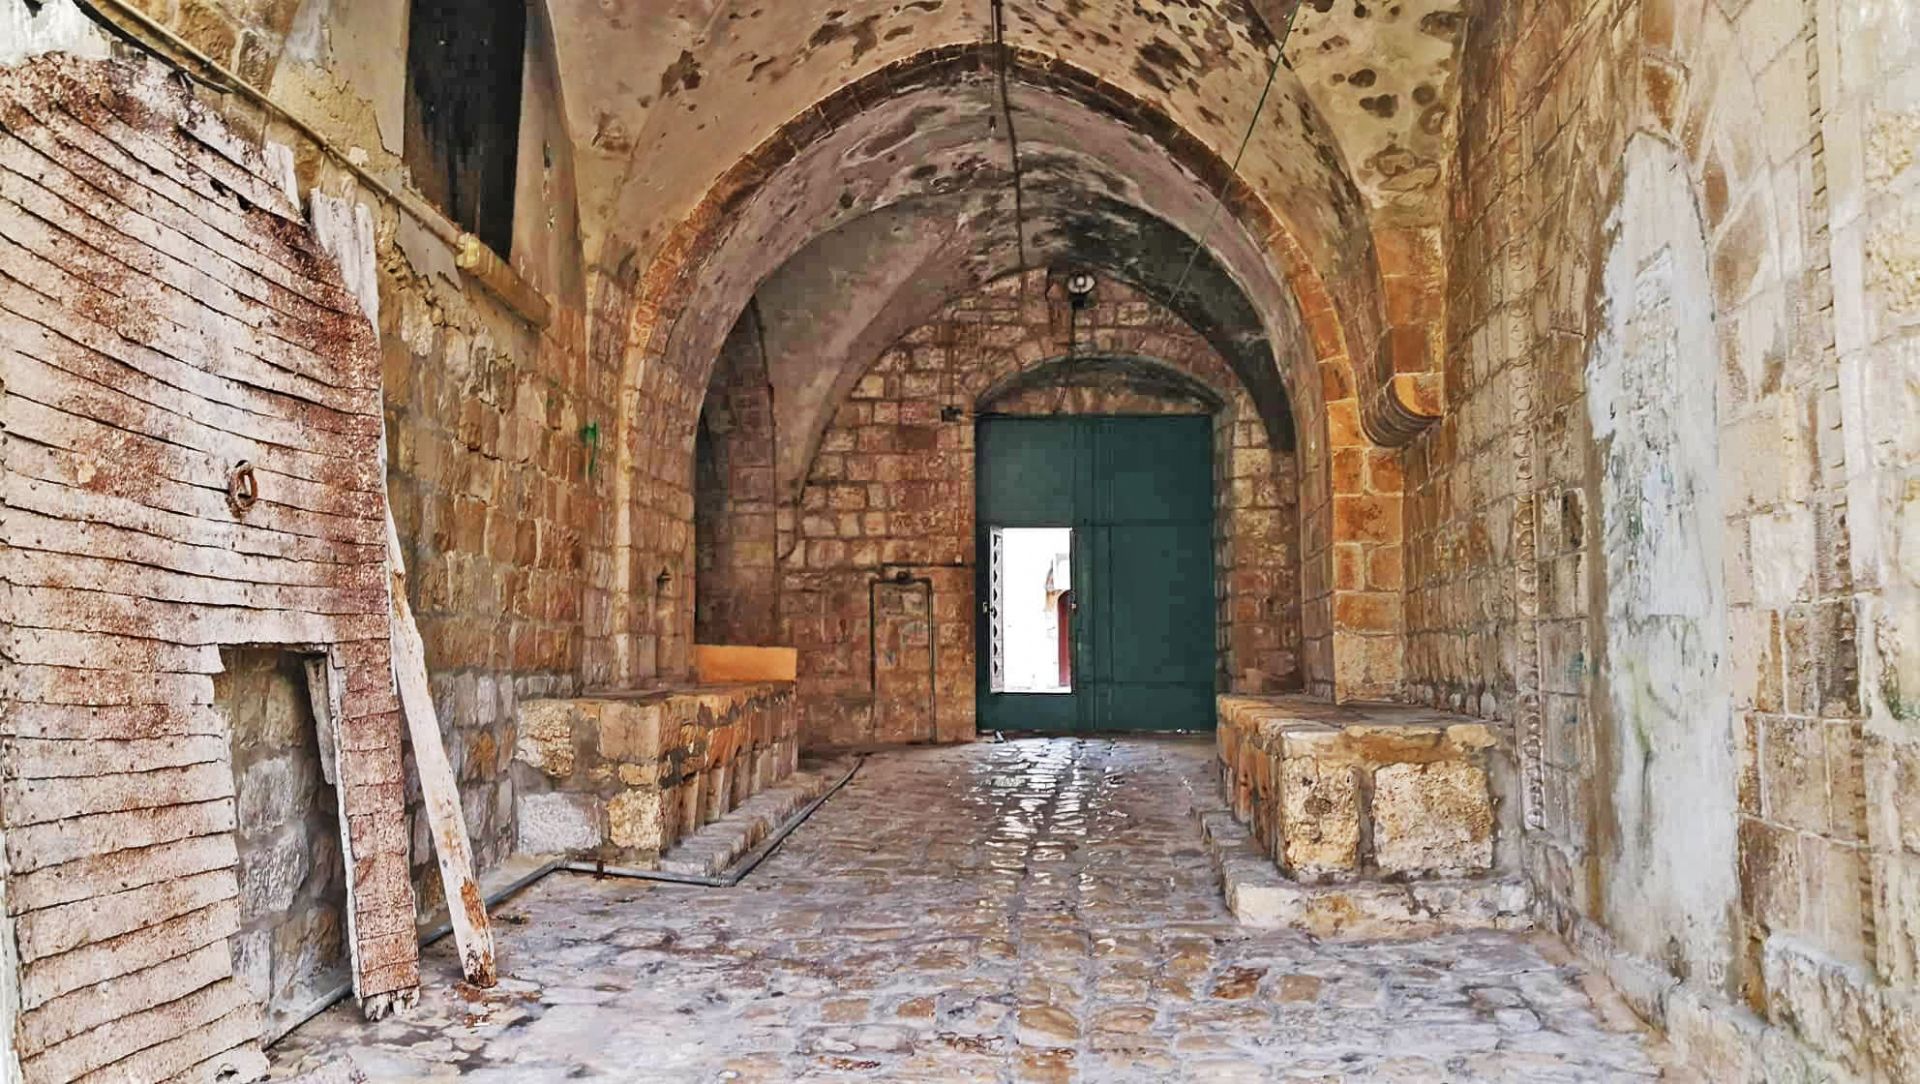 مدخل القصر من الداخل ويظهر البلاط السلطاني